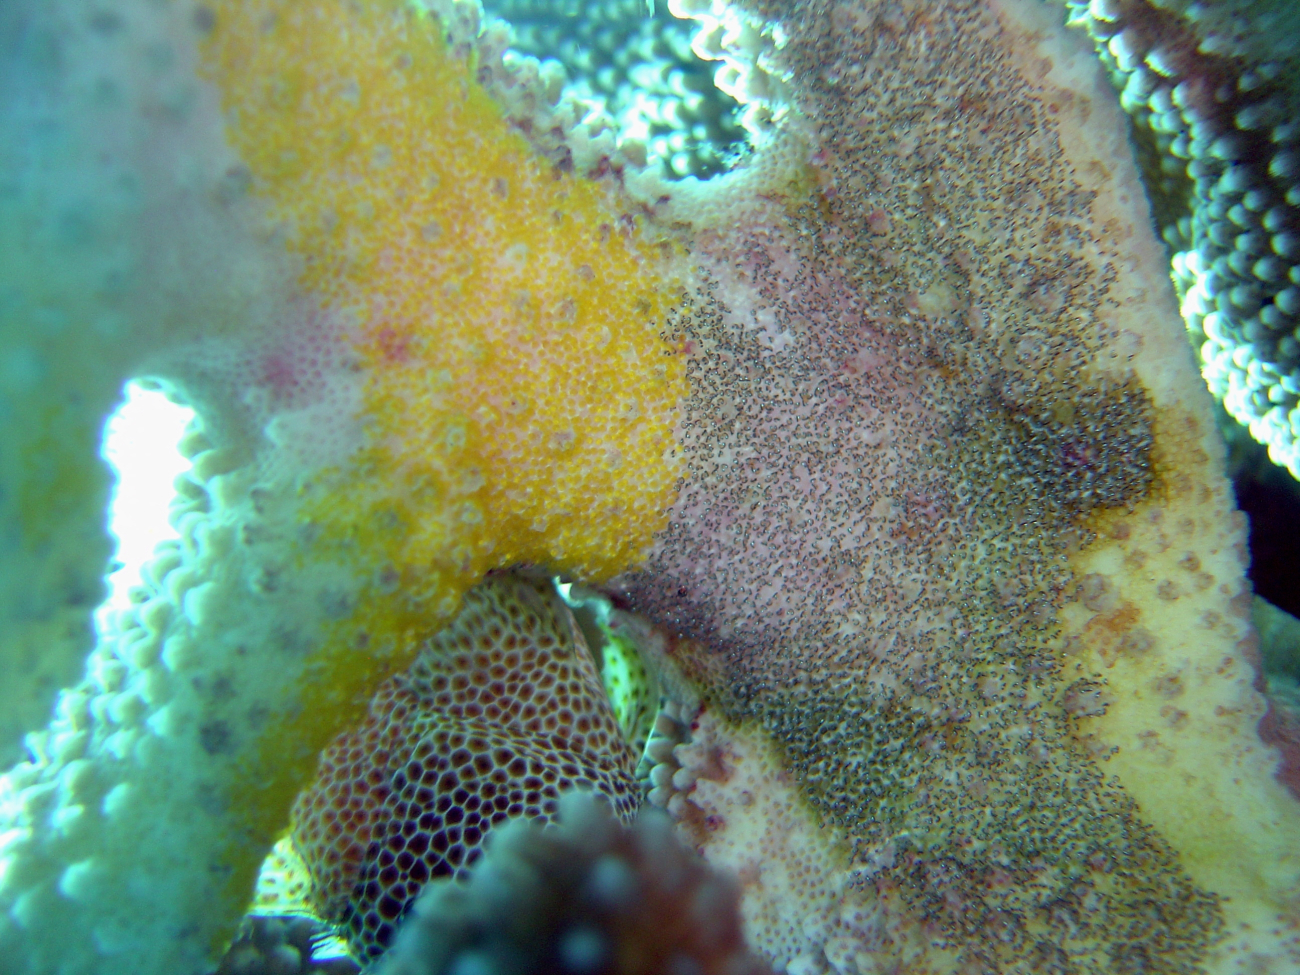 Diseased coral